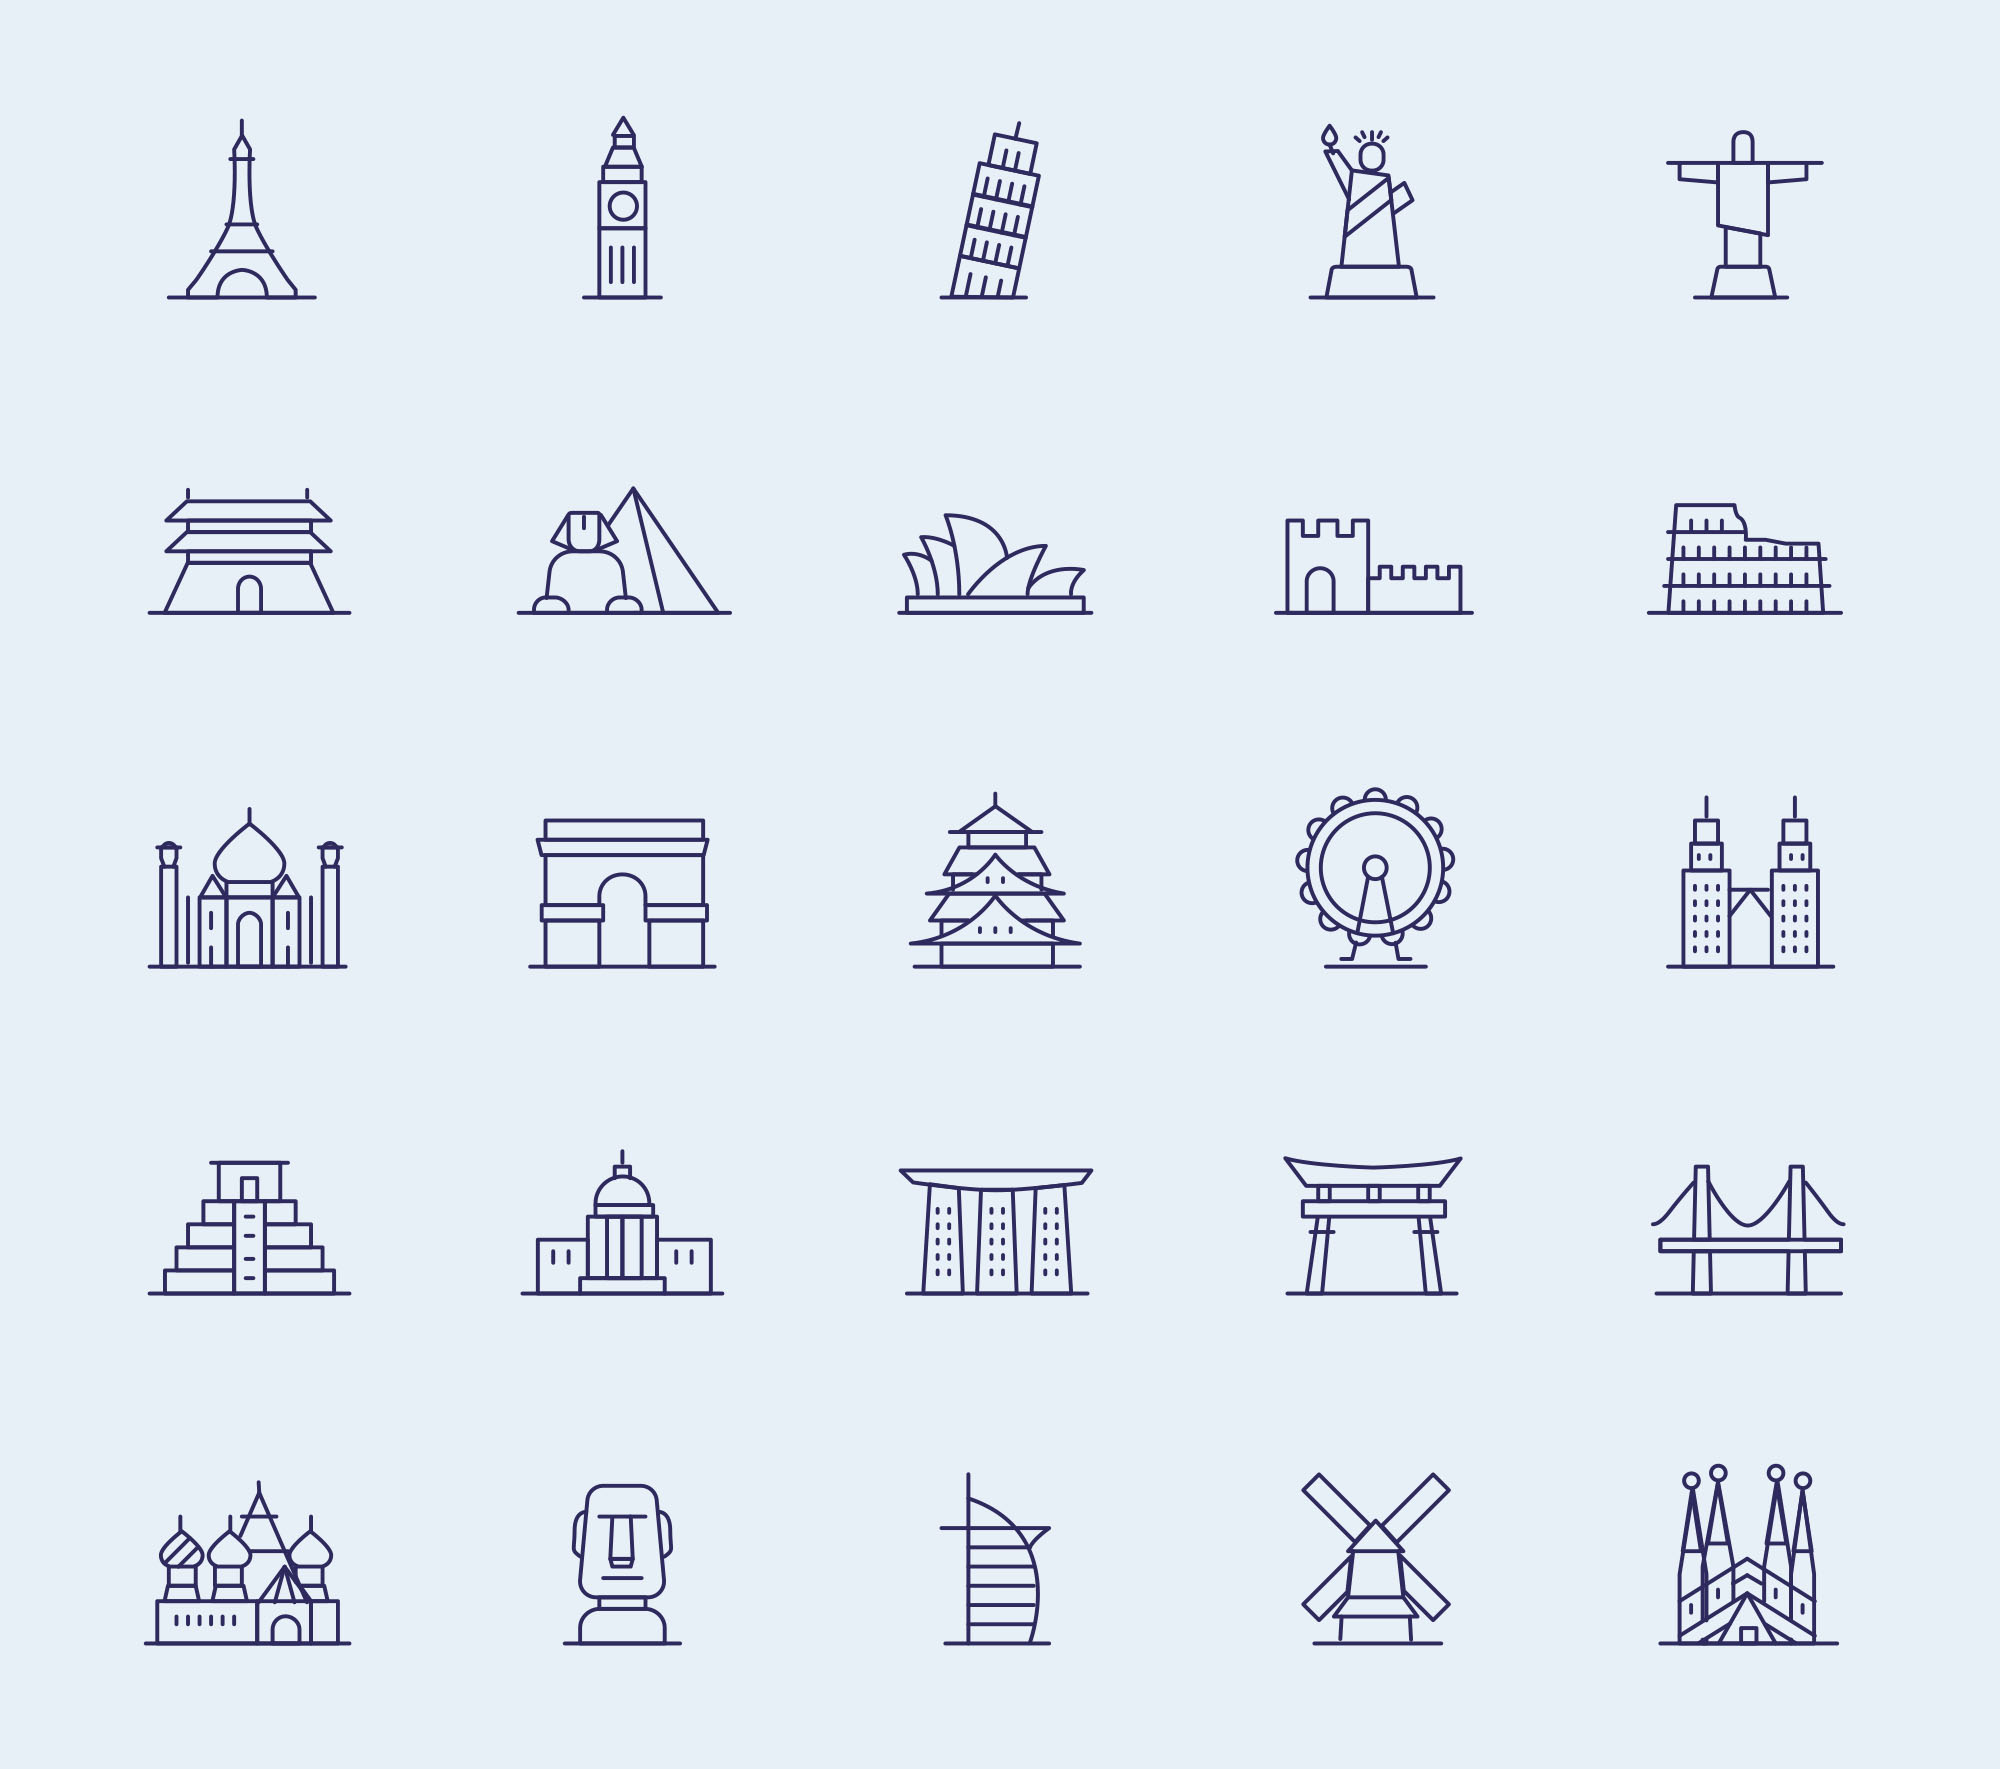 25枚世界各地著名地标图形矢量图标 25 vector landmark icons